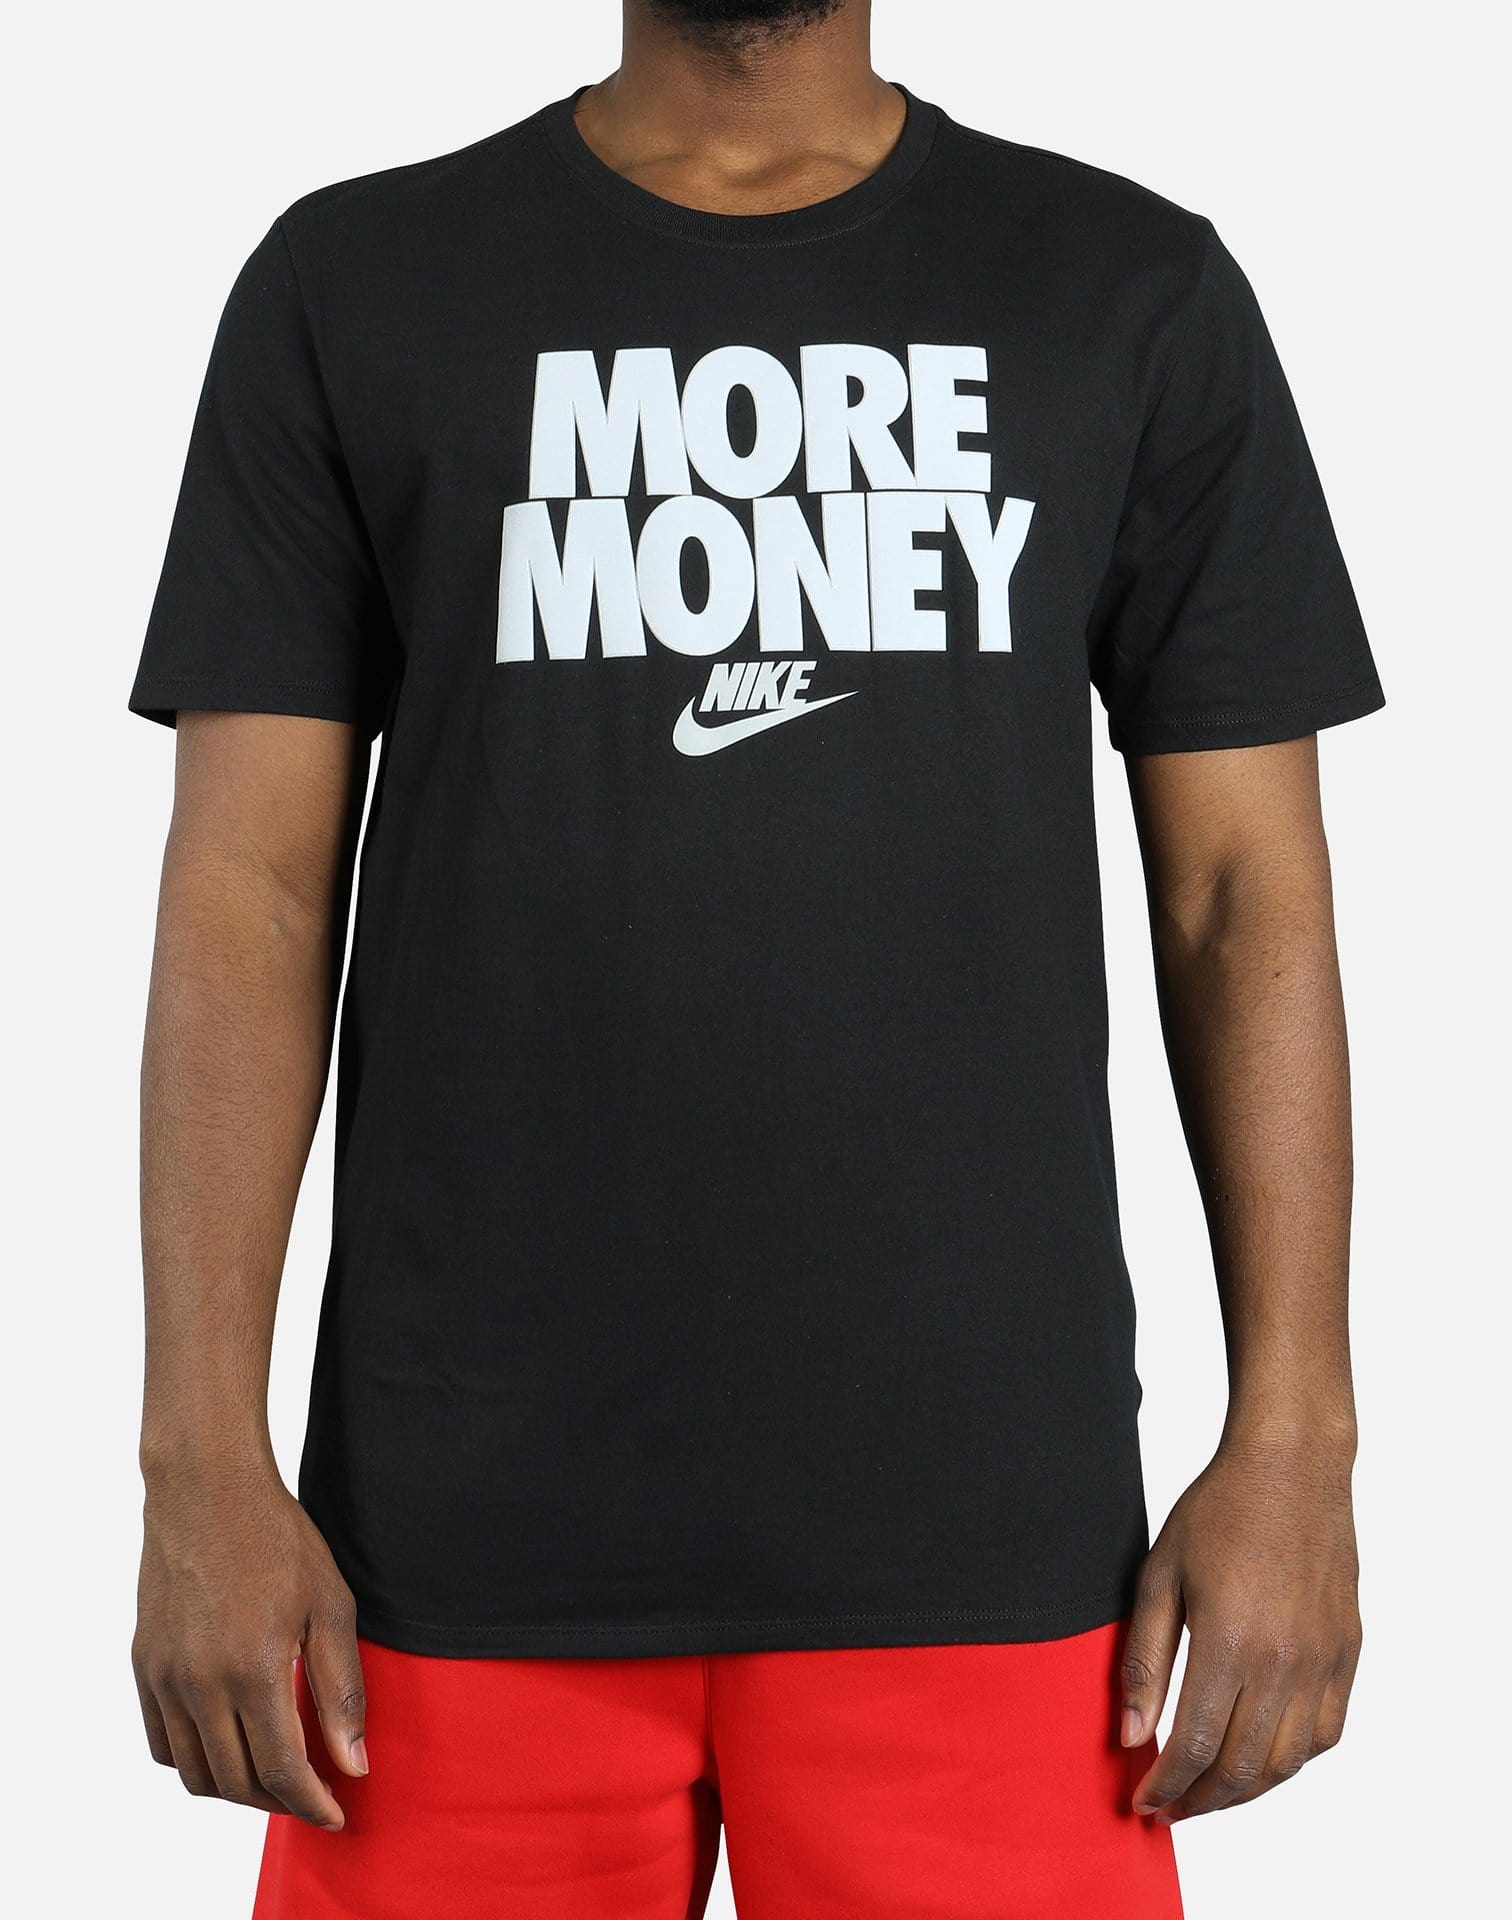 Nike AIR MONEY TABLE TEE DTLR